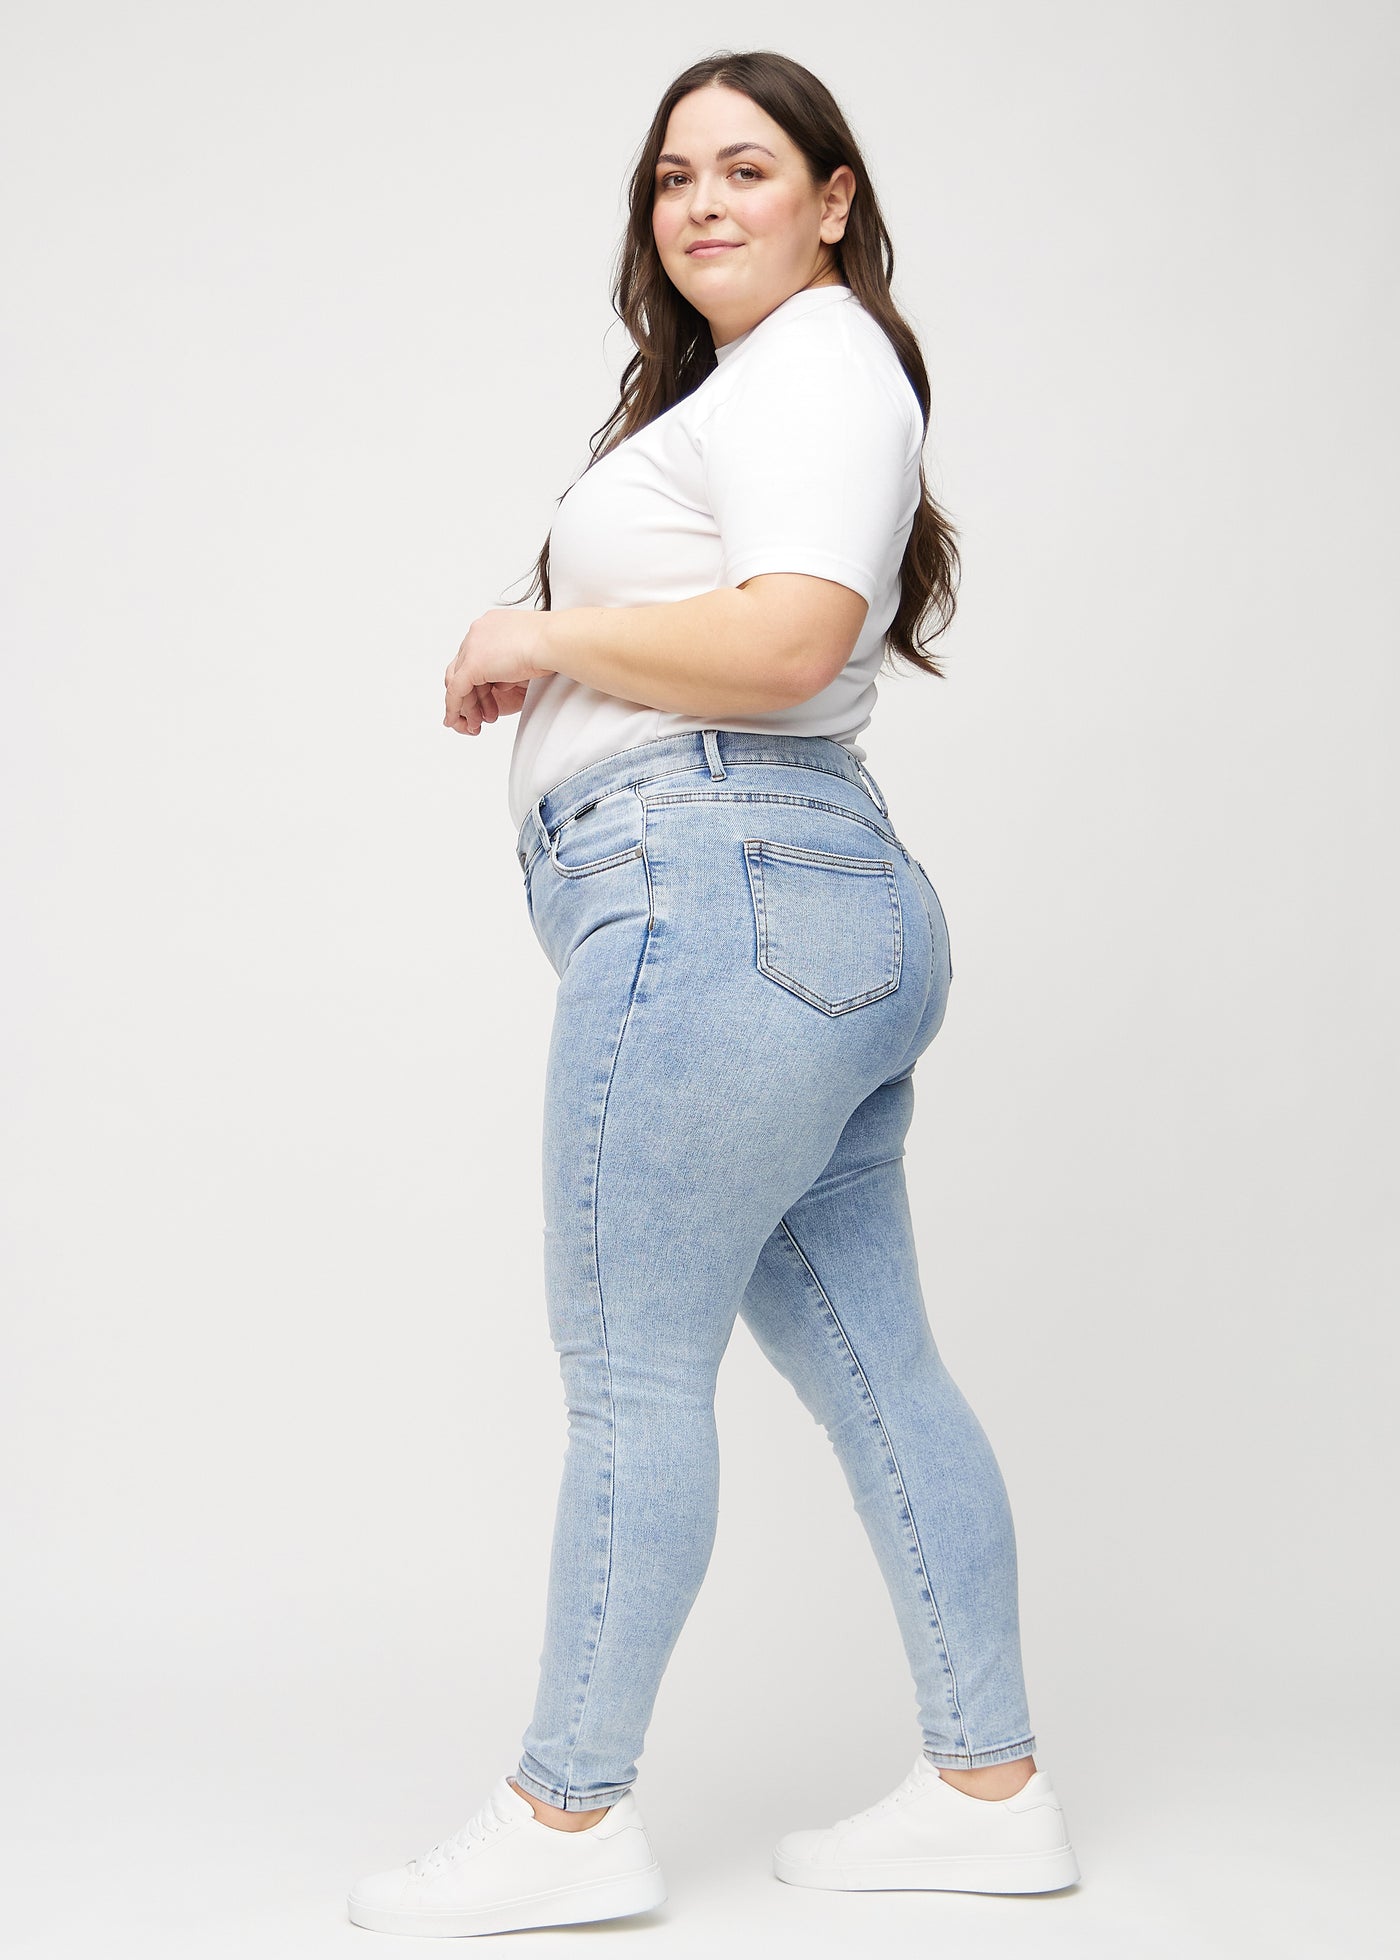 Lys denim skinny jeans set fra siden på en plus-size model.